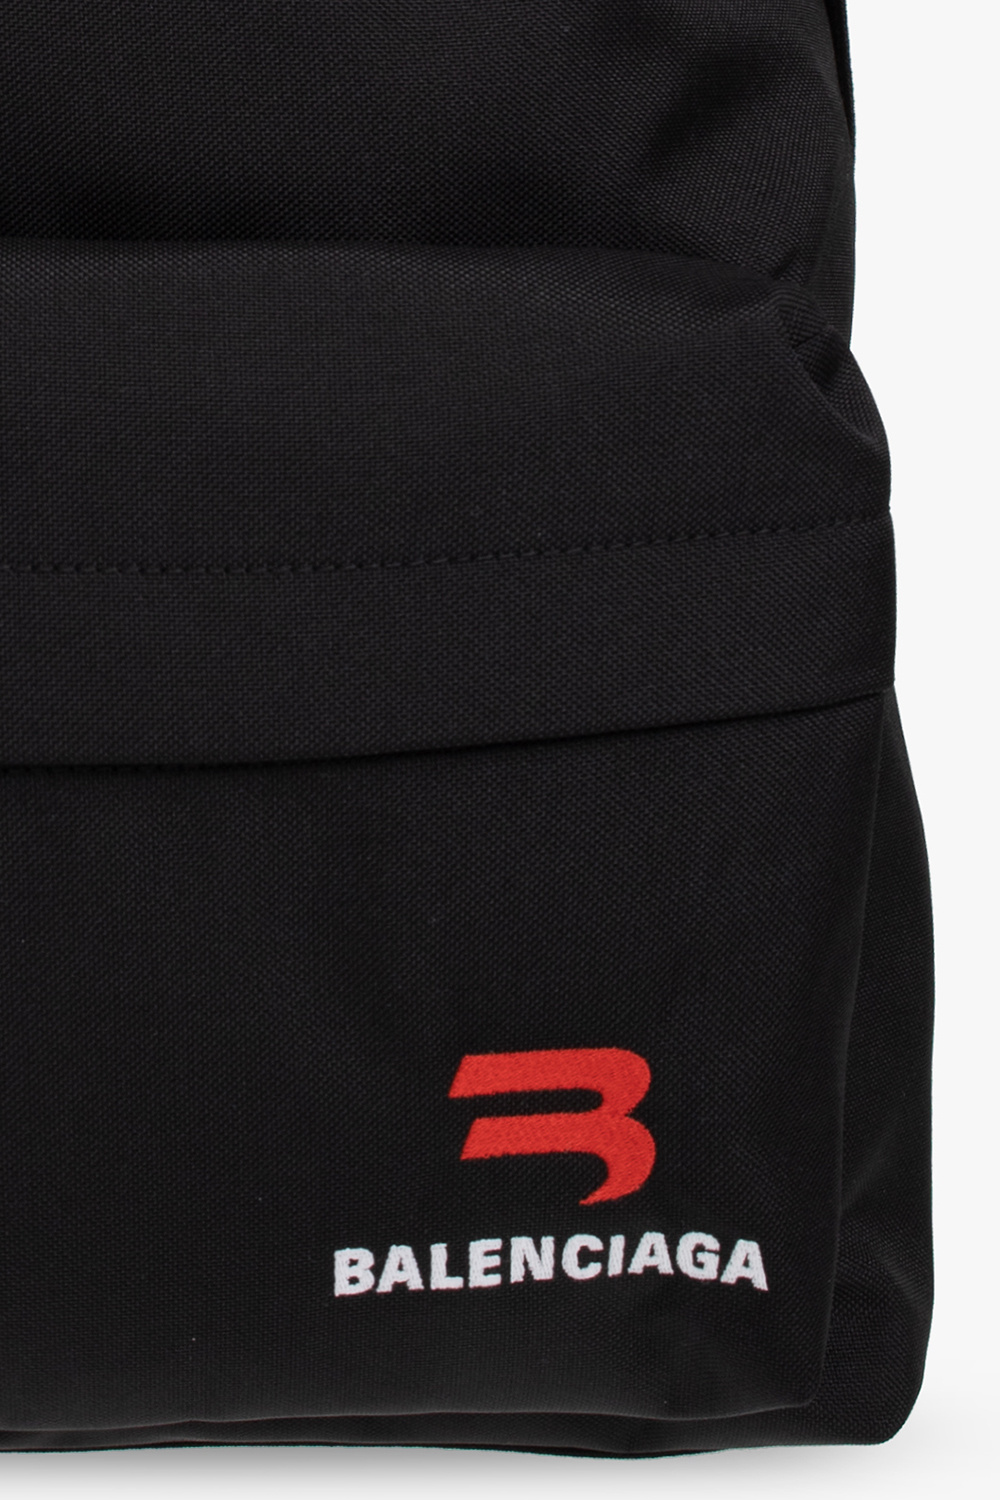 Balenciaga this backpack with logo